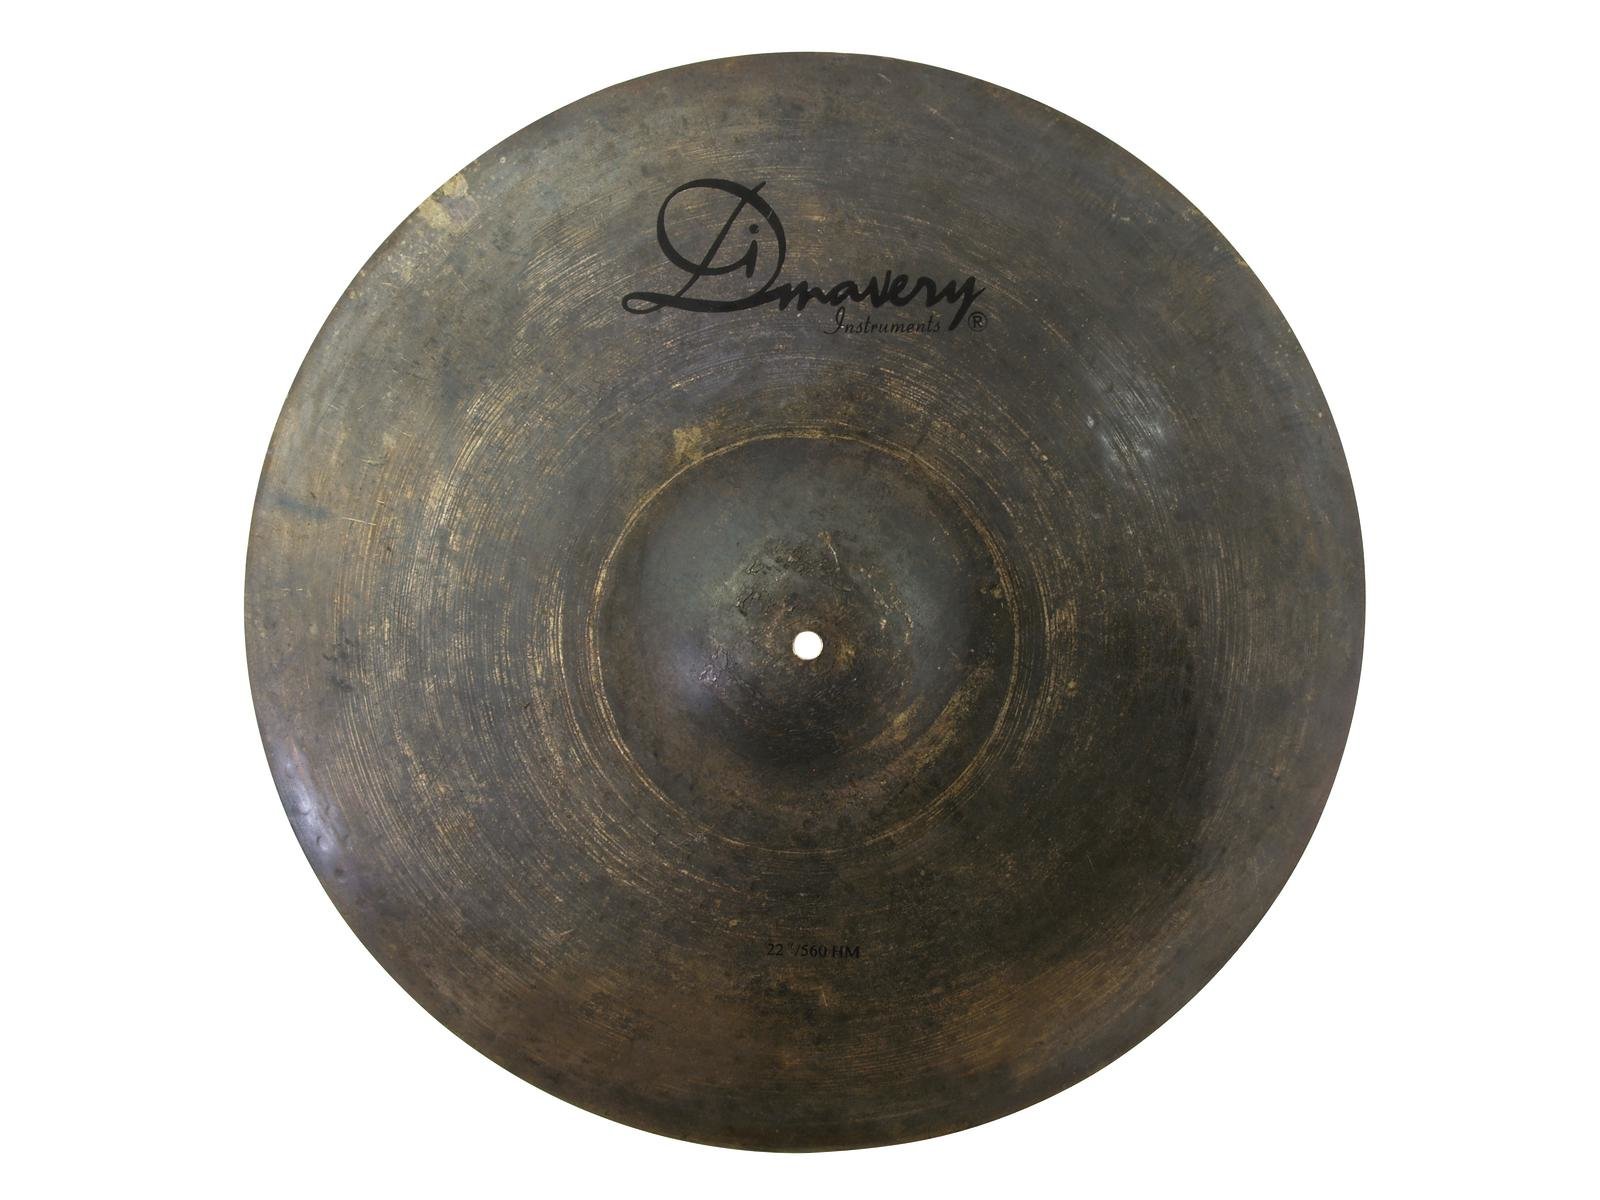 DIMAVERY DBHR-822 Cymbal 22-Ride